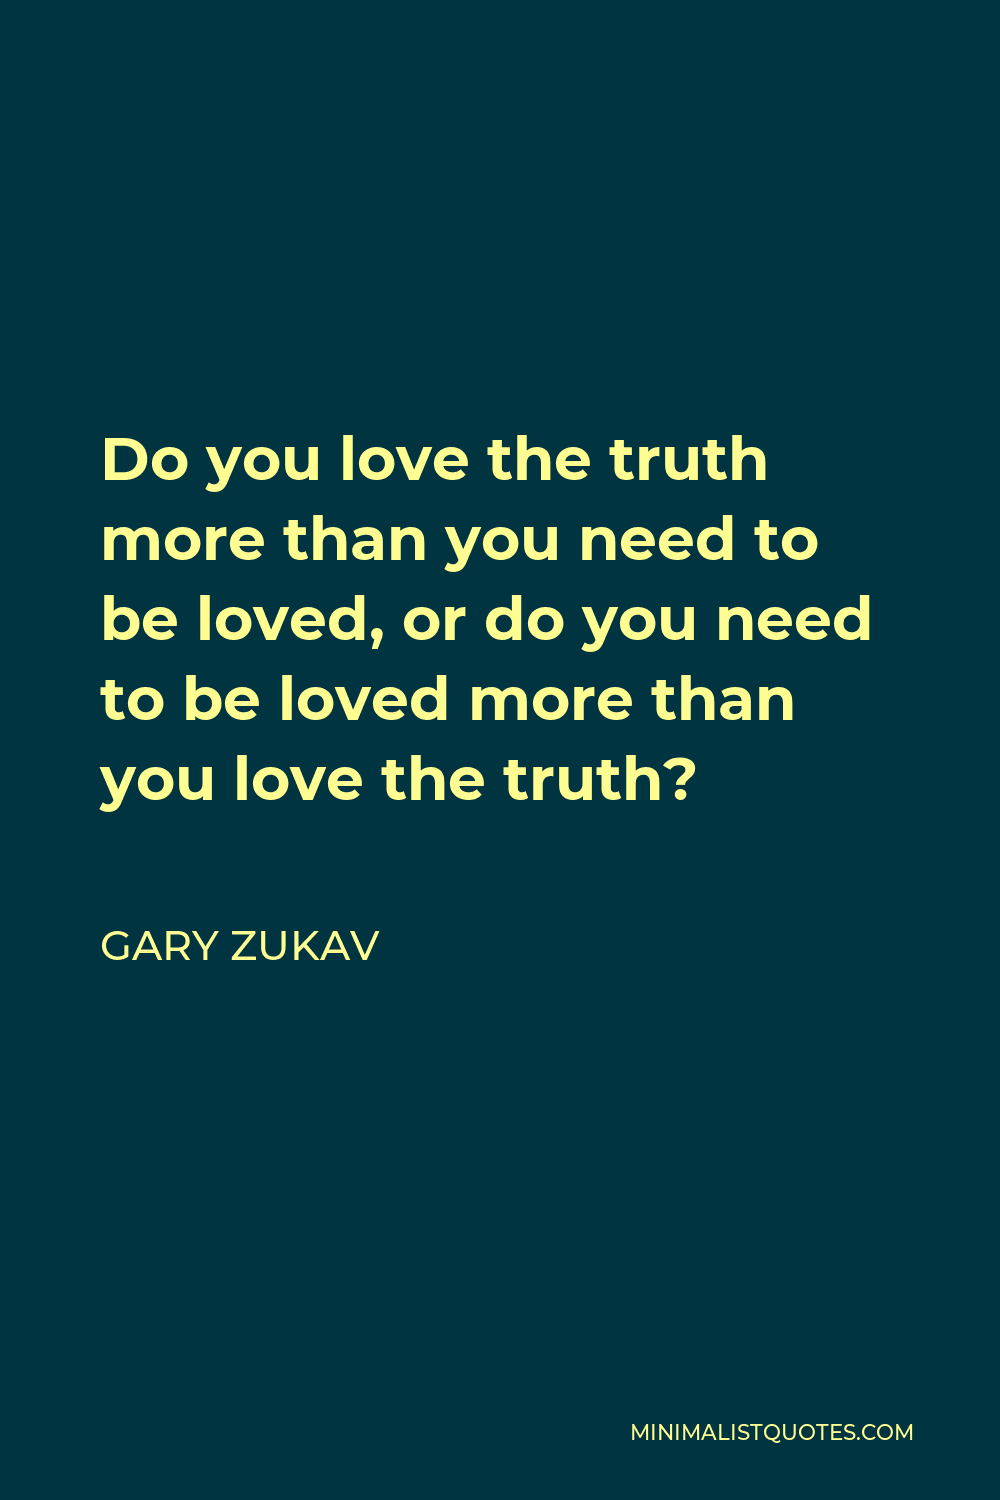 Gary Zukav Quote - Do you love the truth more than you need to be loved, or do you need to be loved more than you love the truth?